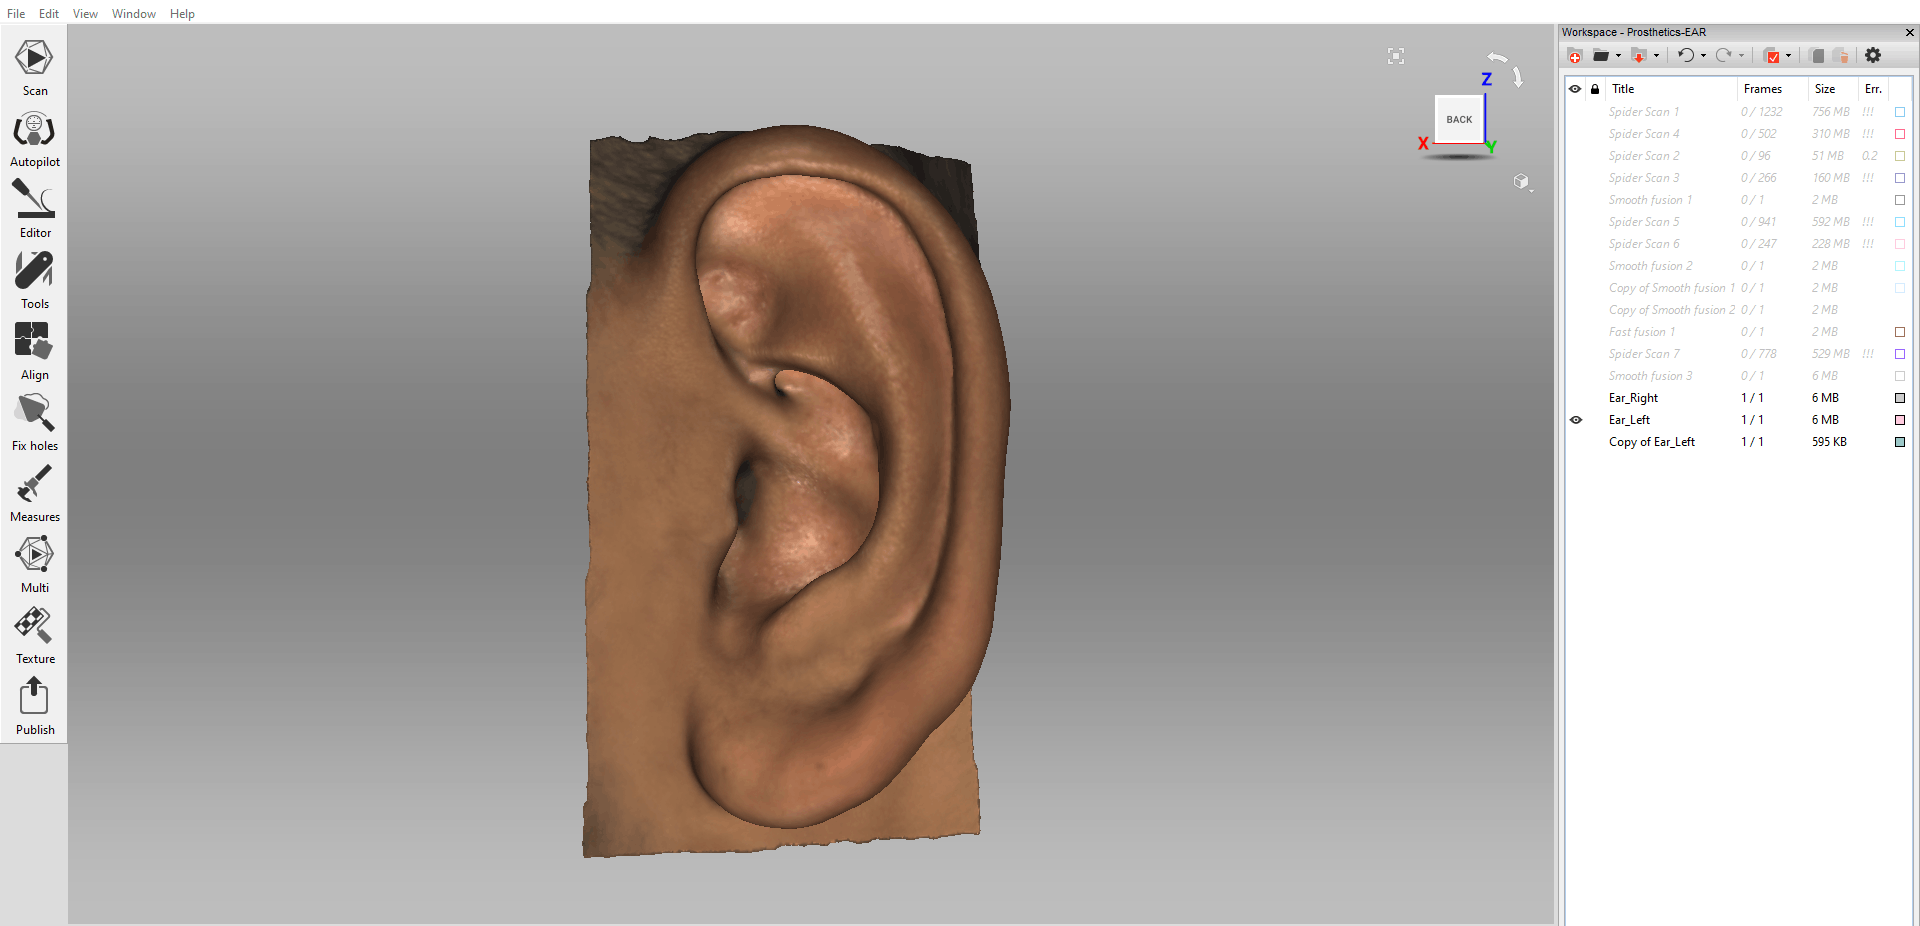 Mirrored left ear shown in Artec Studio